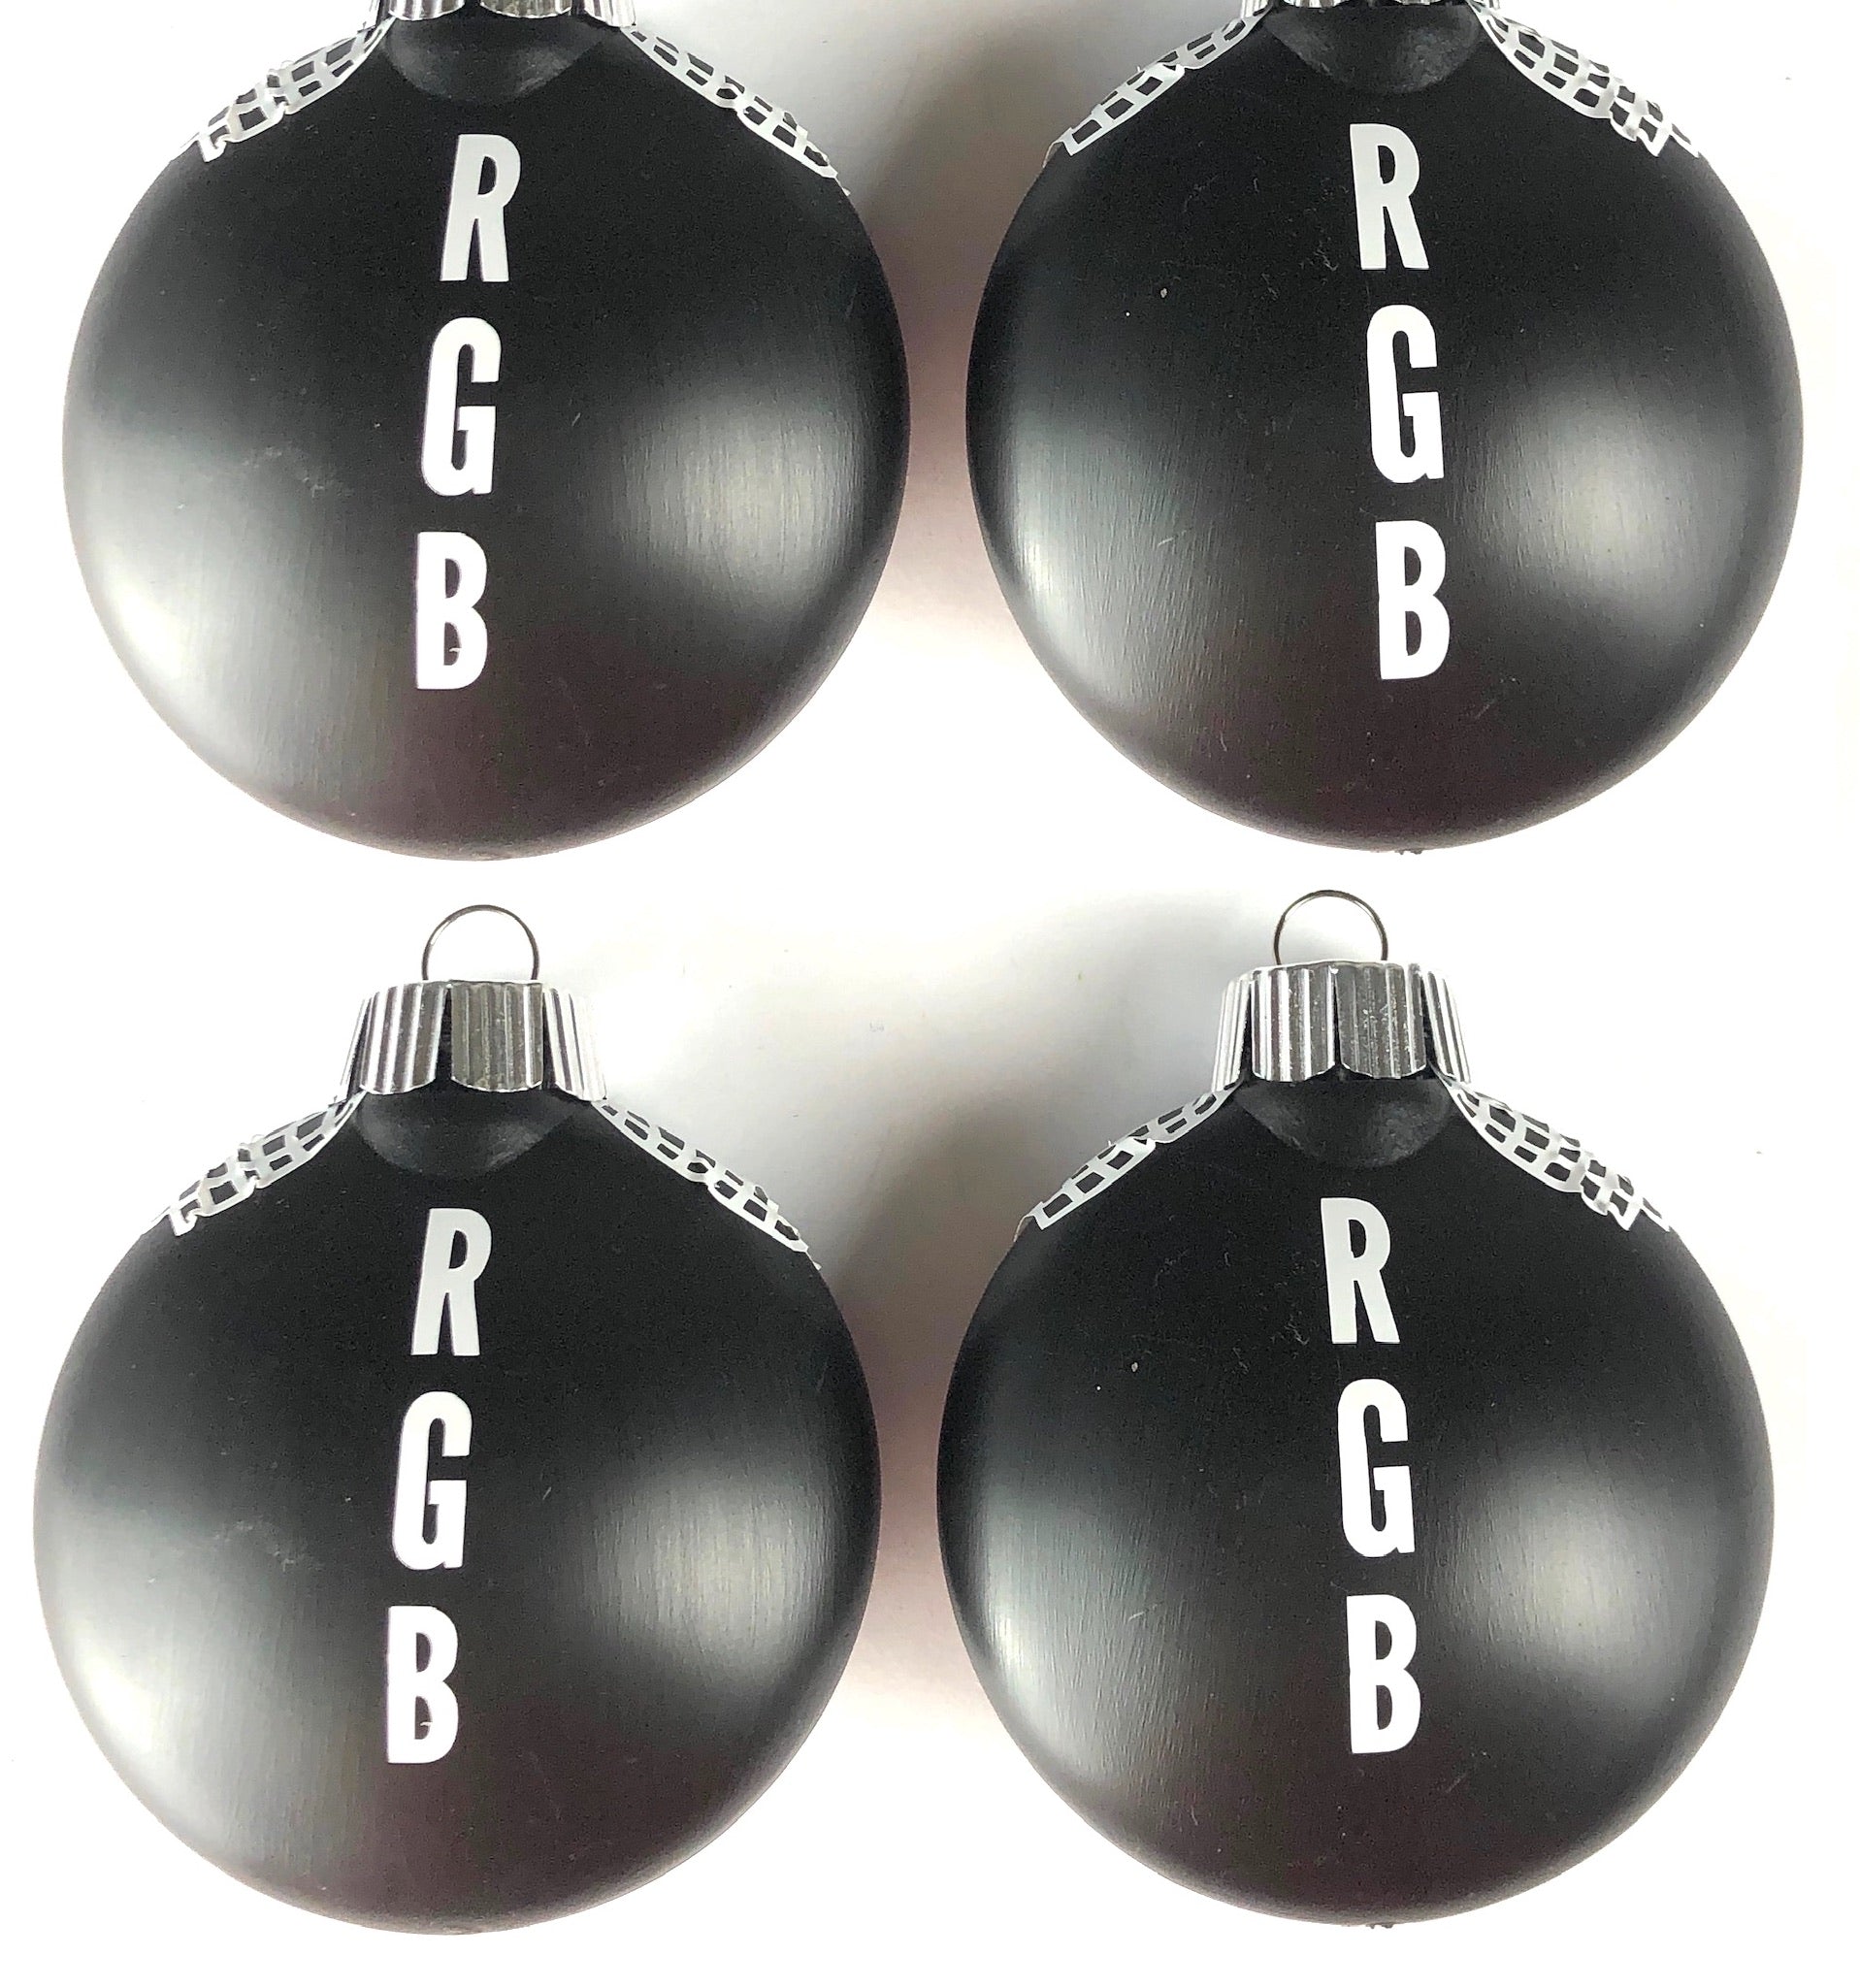 Ruth Bader Ginsburg Collar Ornaments - Set of 4